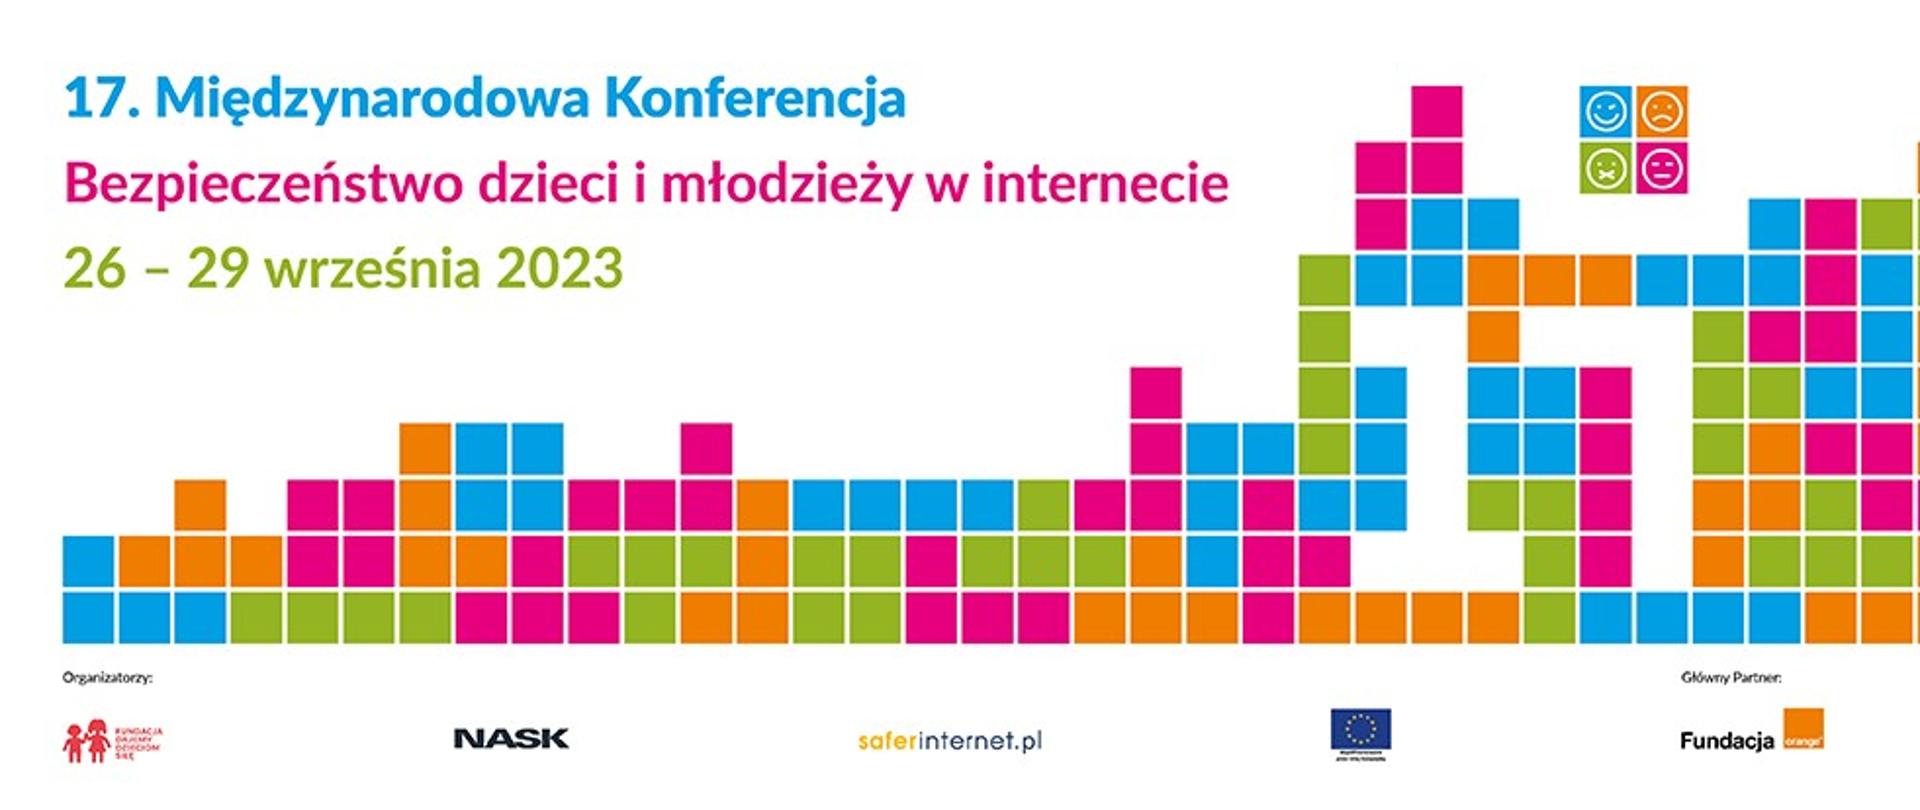 Plakat wydarzenia, kolorowe małe kwadraty na górze napis 17. Międzynarodowa Konferencja „Bezpieczeństwo dzieci i młodzieży w internecie” 26-29 września